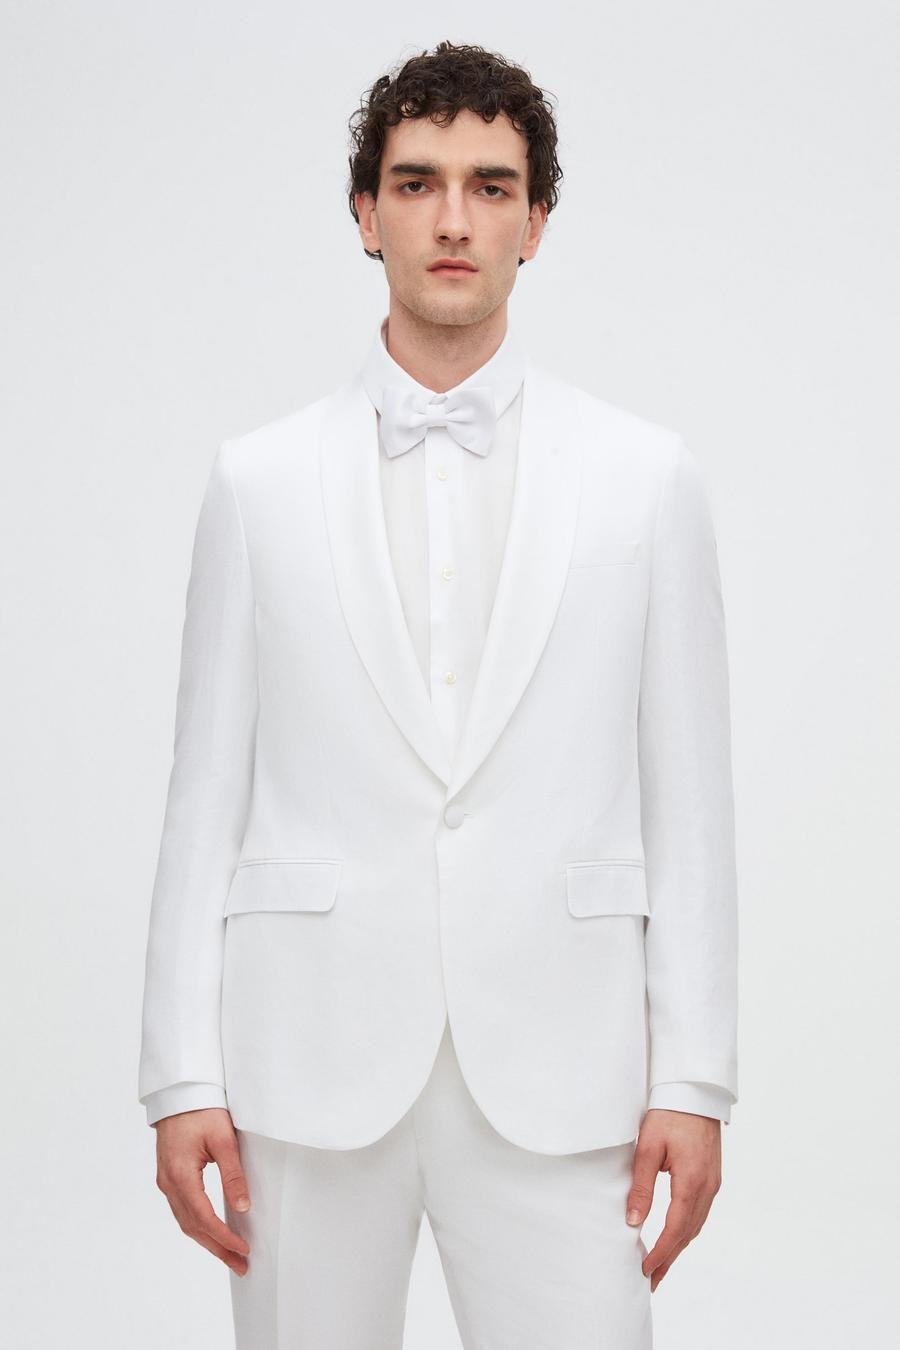 Twn Slim Fit Beyaz Düz Keten-Tencel™ Damatlık & Smokin Takim Elbise - 8683925245620 | D'S Damat